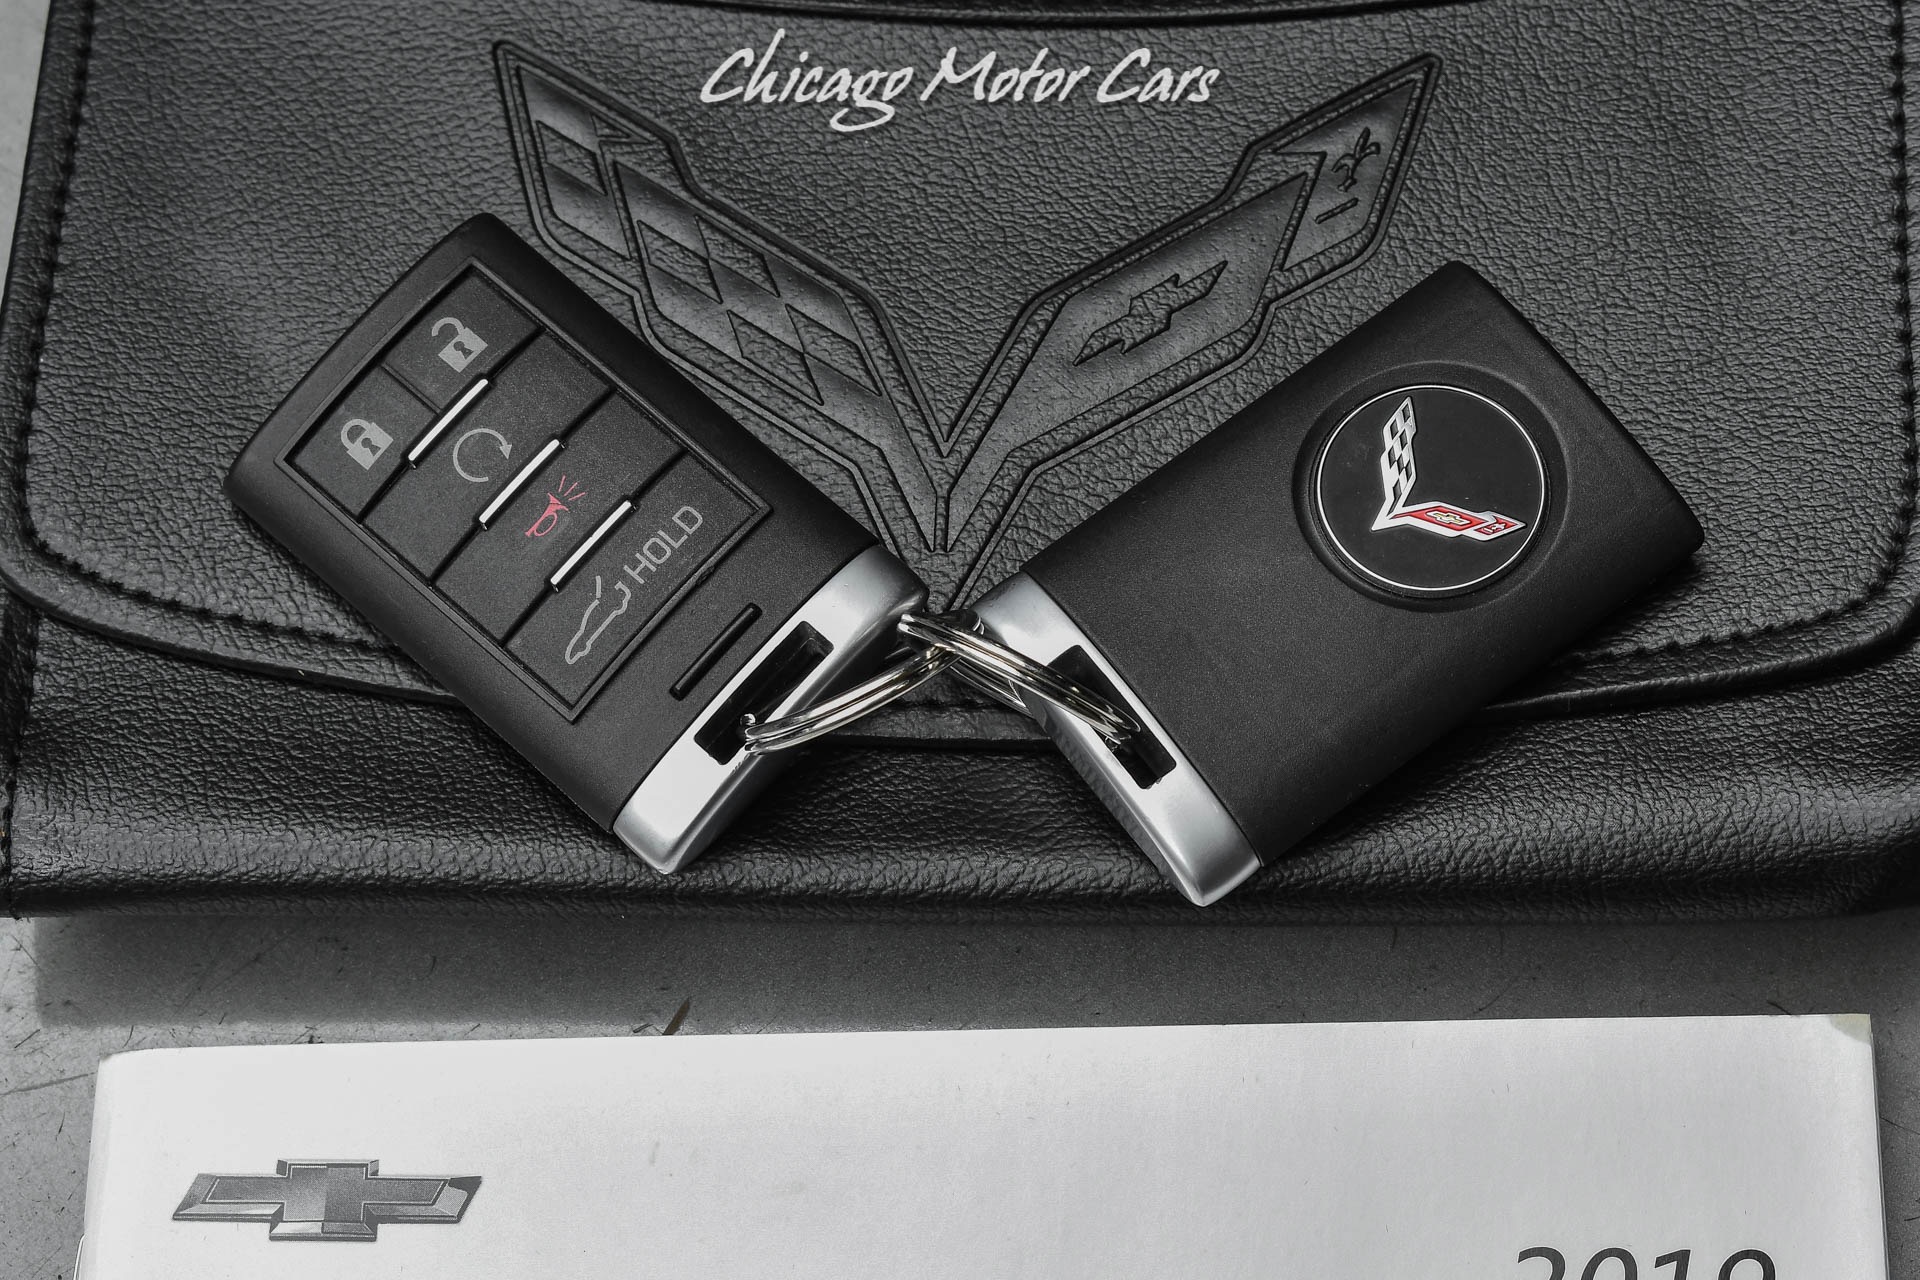 Used-2019-Chevrolet-Corvette-ZR1-3ZR-1200HP-MONSTER-9-SEC-CAR-LOW-MILES-1-OWNER